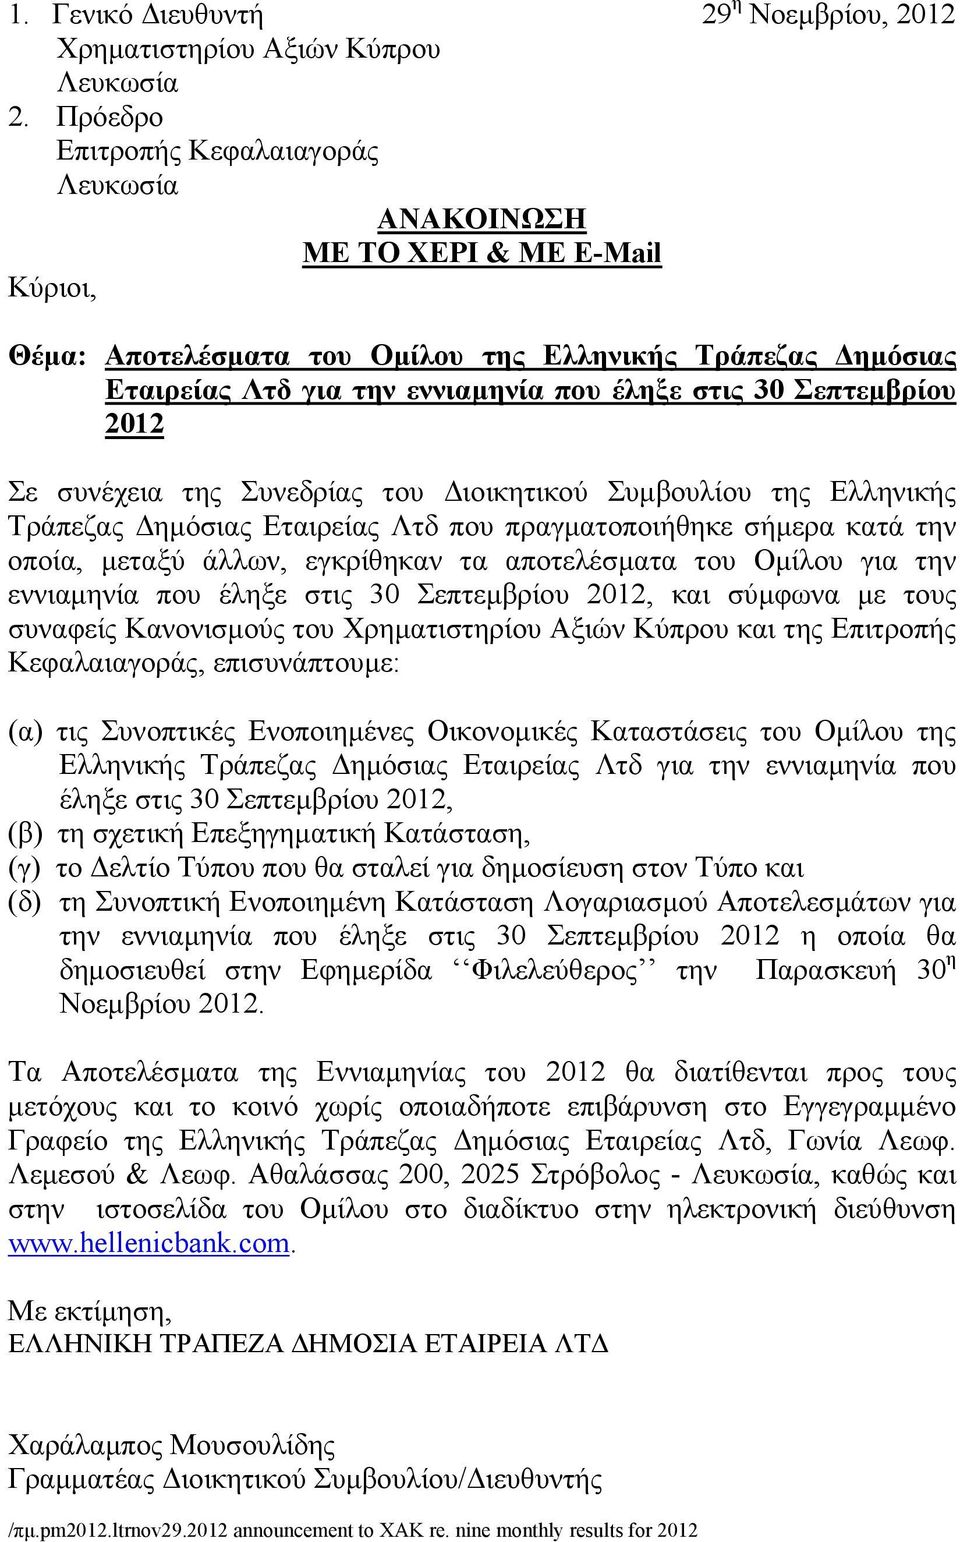 Σεπτεµβρίου 2012 Σε συνέχεια της Συνεδρίας του ιοικητικού Συµβουλίου της Ελληνικής Τράπεζας ηµόσιας Εταιρείας Λτδ που πραγµατοποιήθηκε σήµερα κατά την οποία, µεταξύ άλλων, εγκρίθηκαν τα αποτελέσµατα